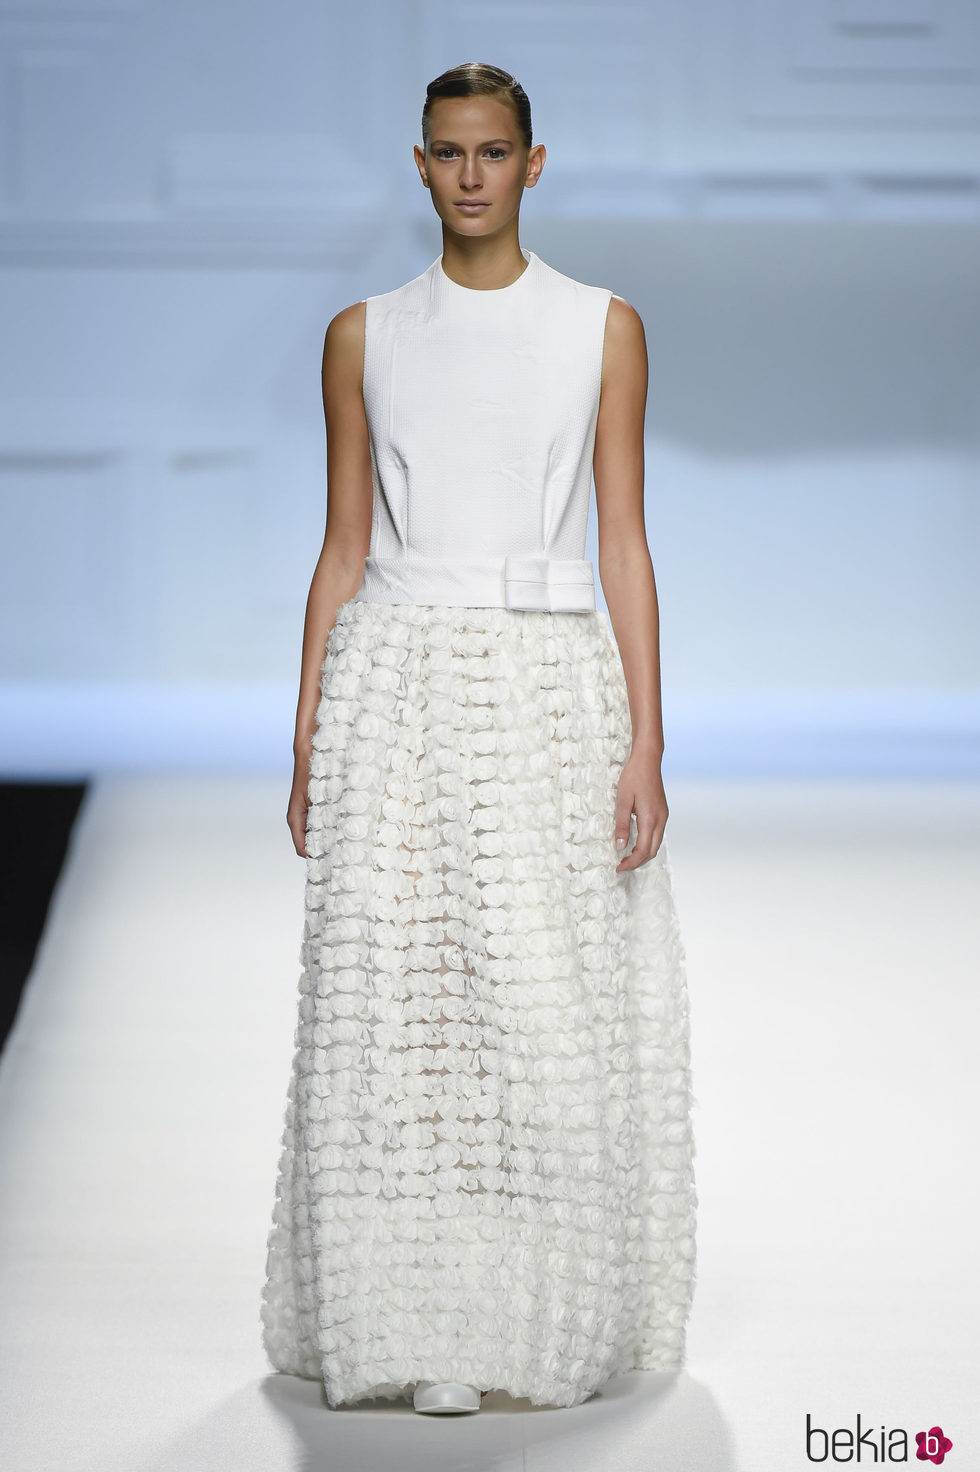 Vestido blanco de flores de Devota & Lomba primavera/verano 2018 en Madrid Fashion Week